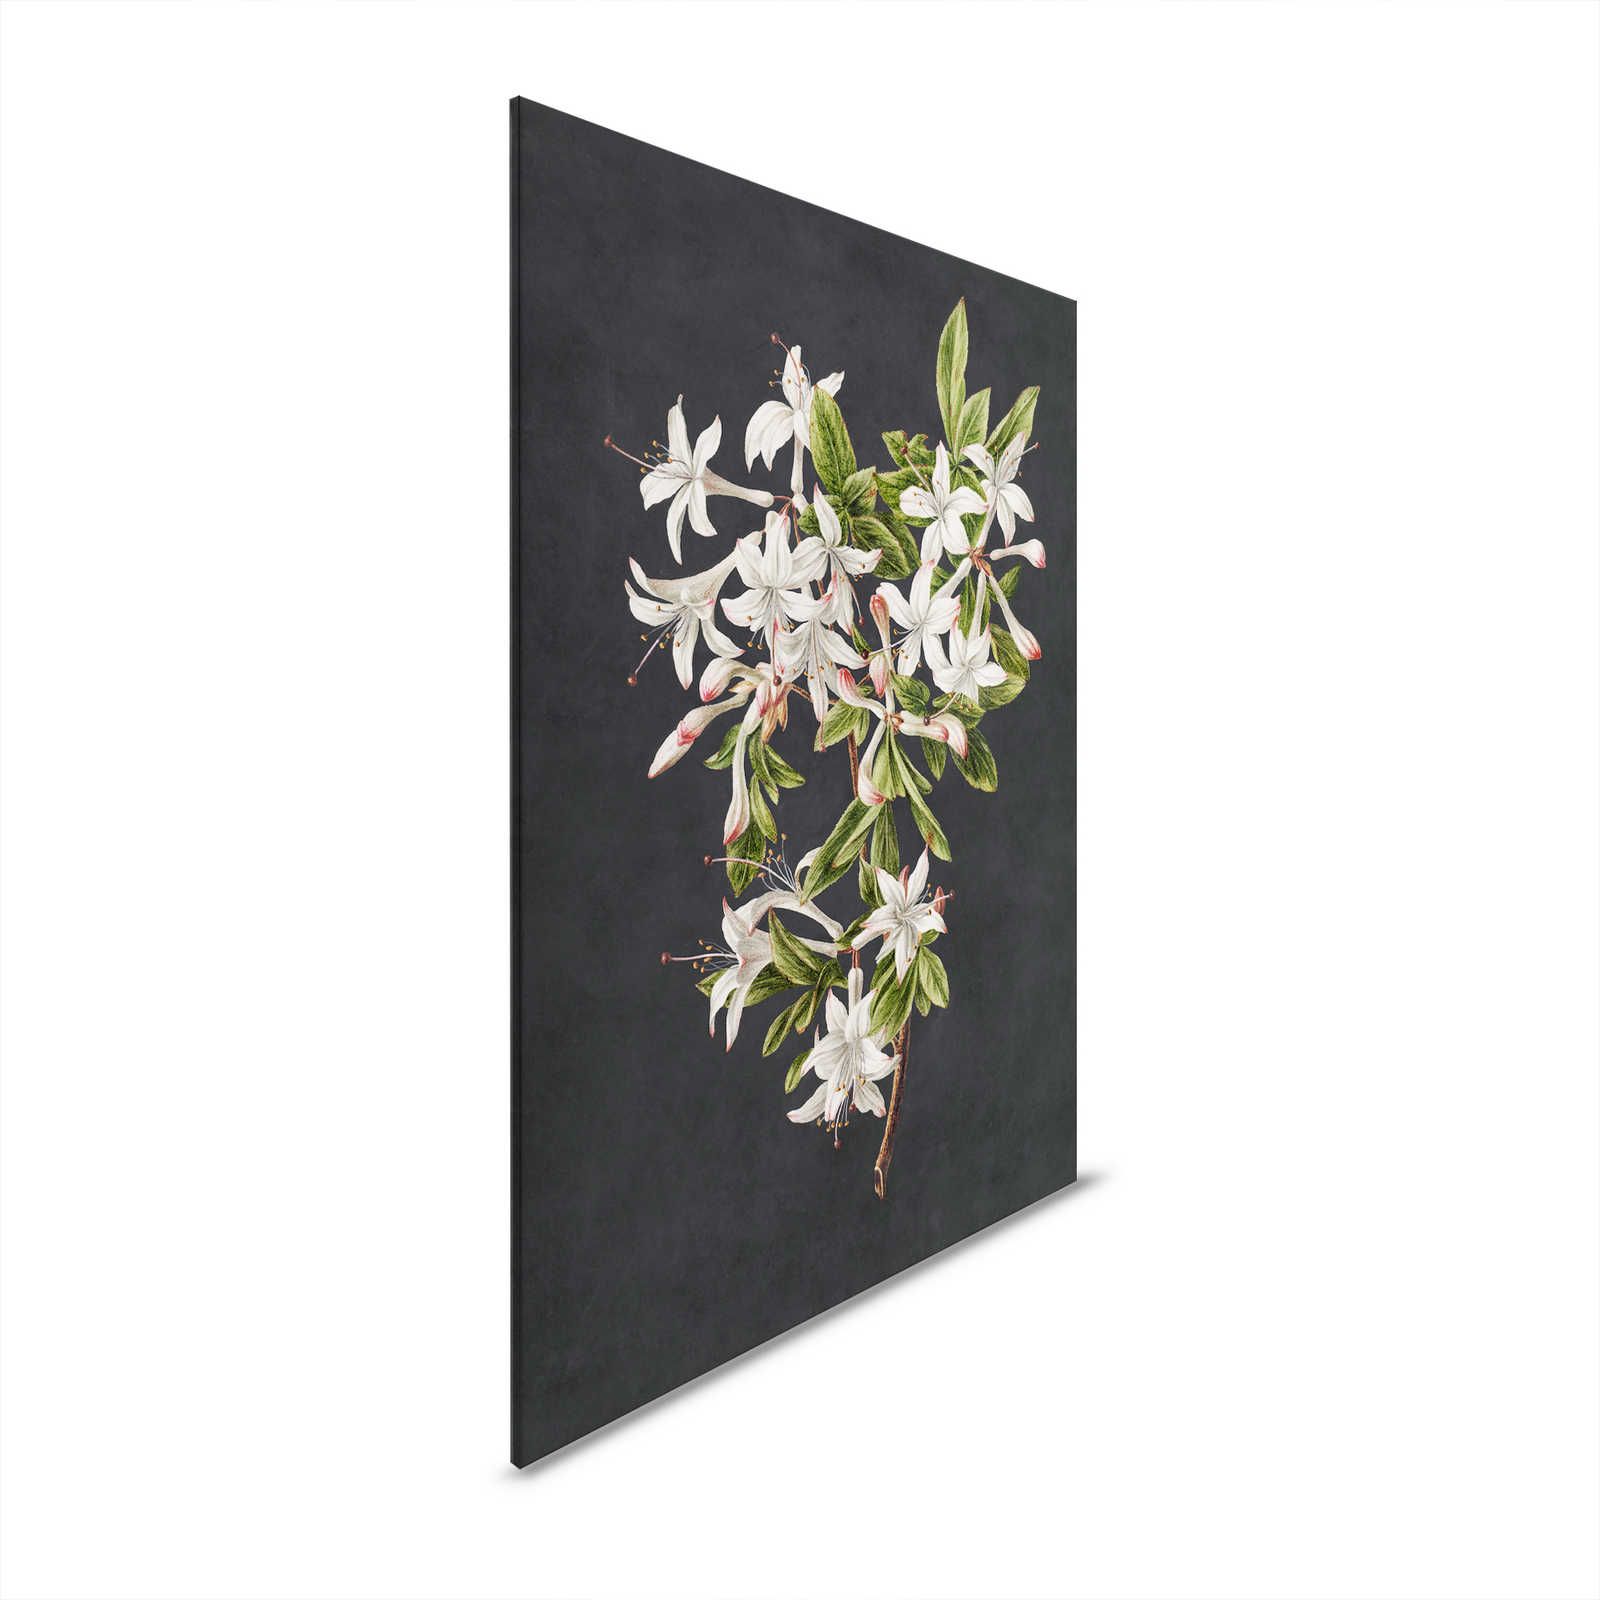 Midnight Garden 2 - Schwarzes Leinwandbild Blütenzweig weiße Blumen – 0,60 m x 0,90 m
